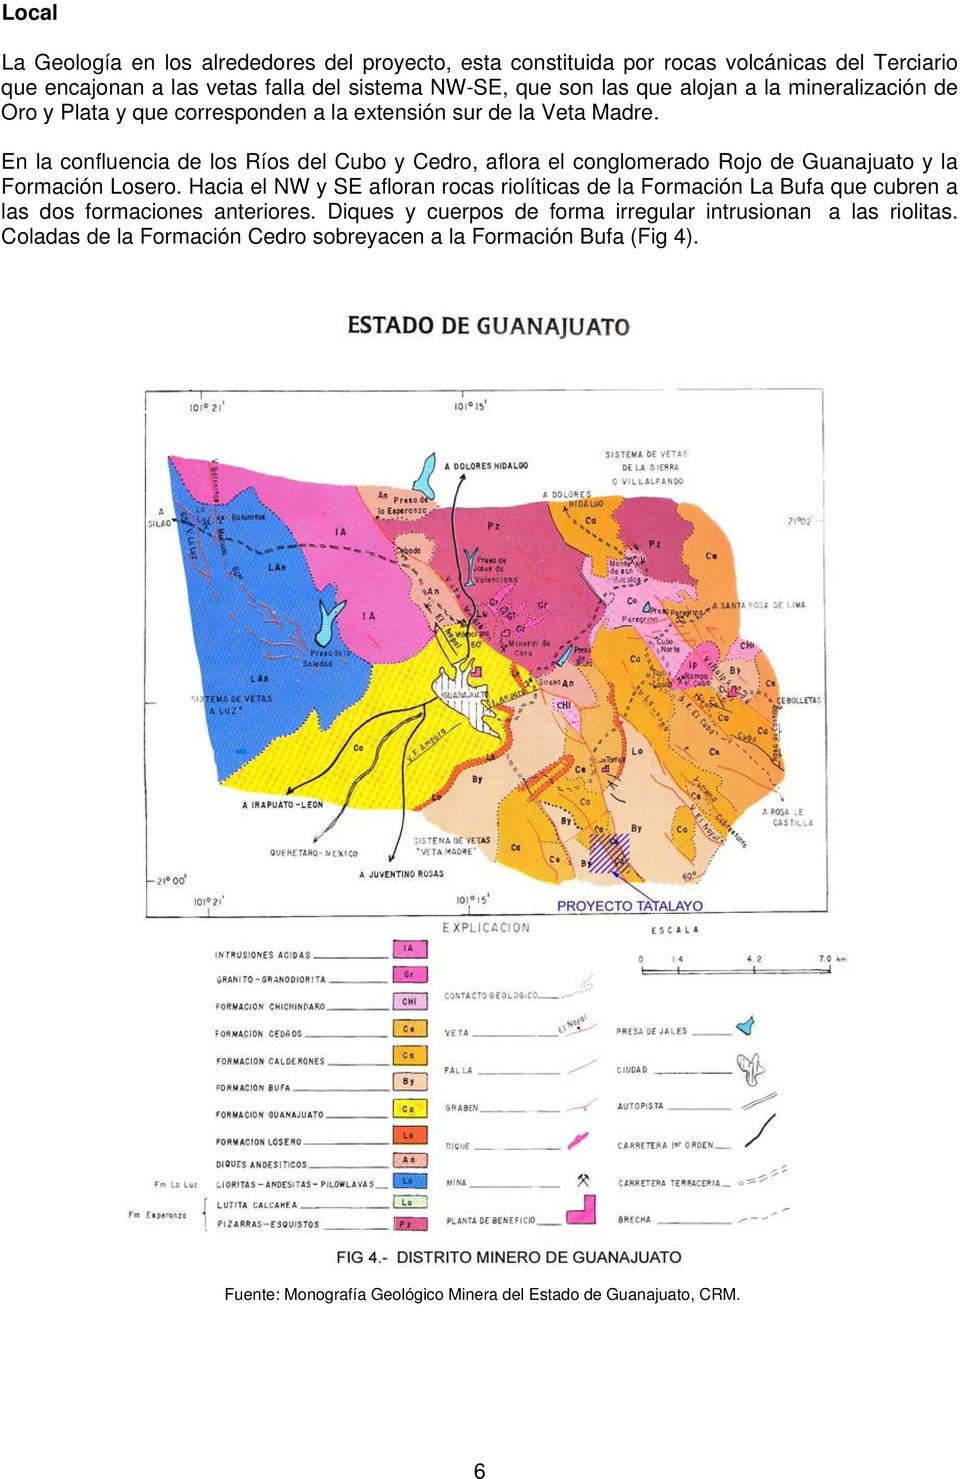 En la confluencia de los Ríos del Cubo y Cedro, aflora el conglomerado Rojo de Guanajuato y la Formación Losero.